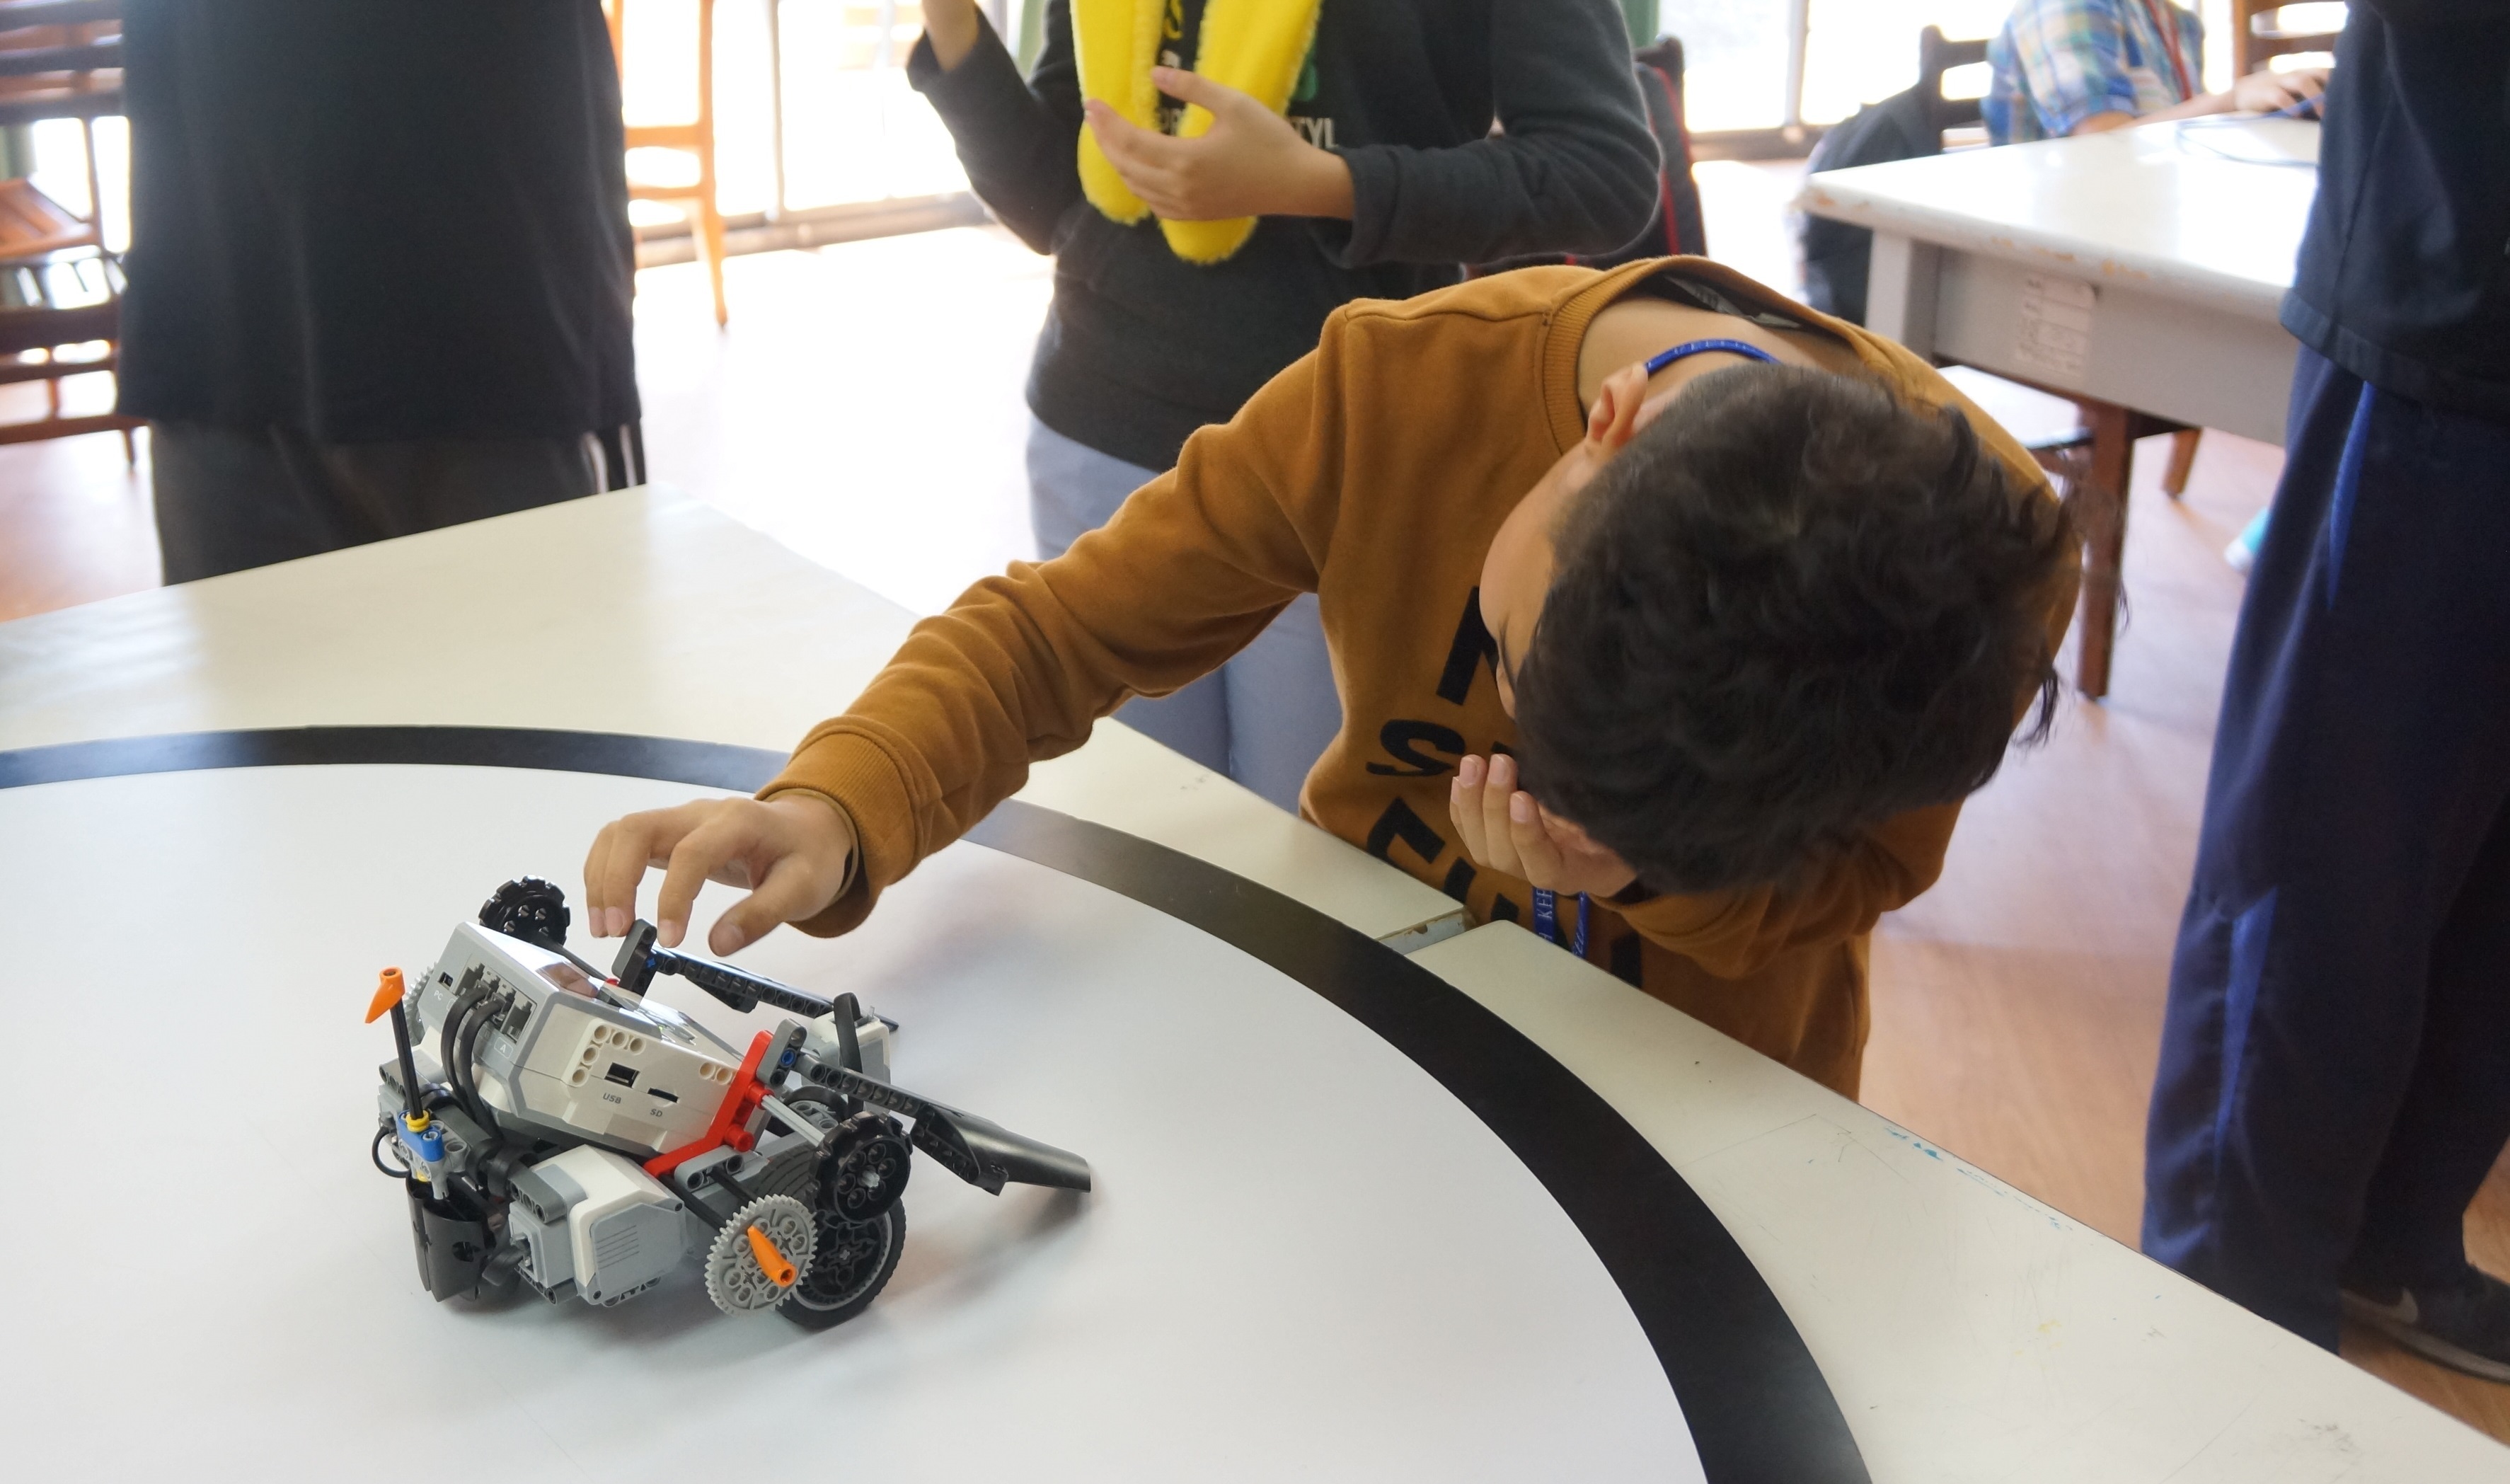 體驗營學童以自己組裝的智慧機器人比賽